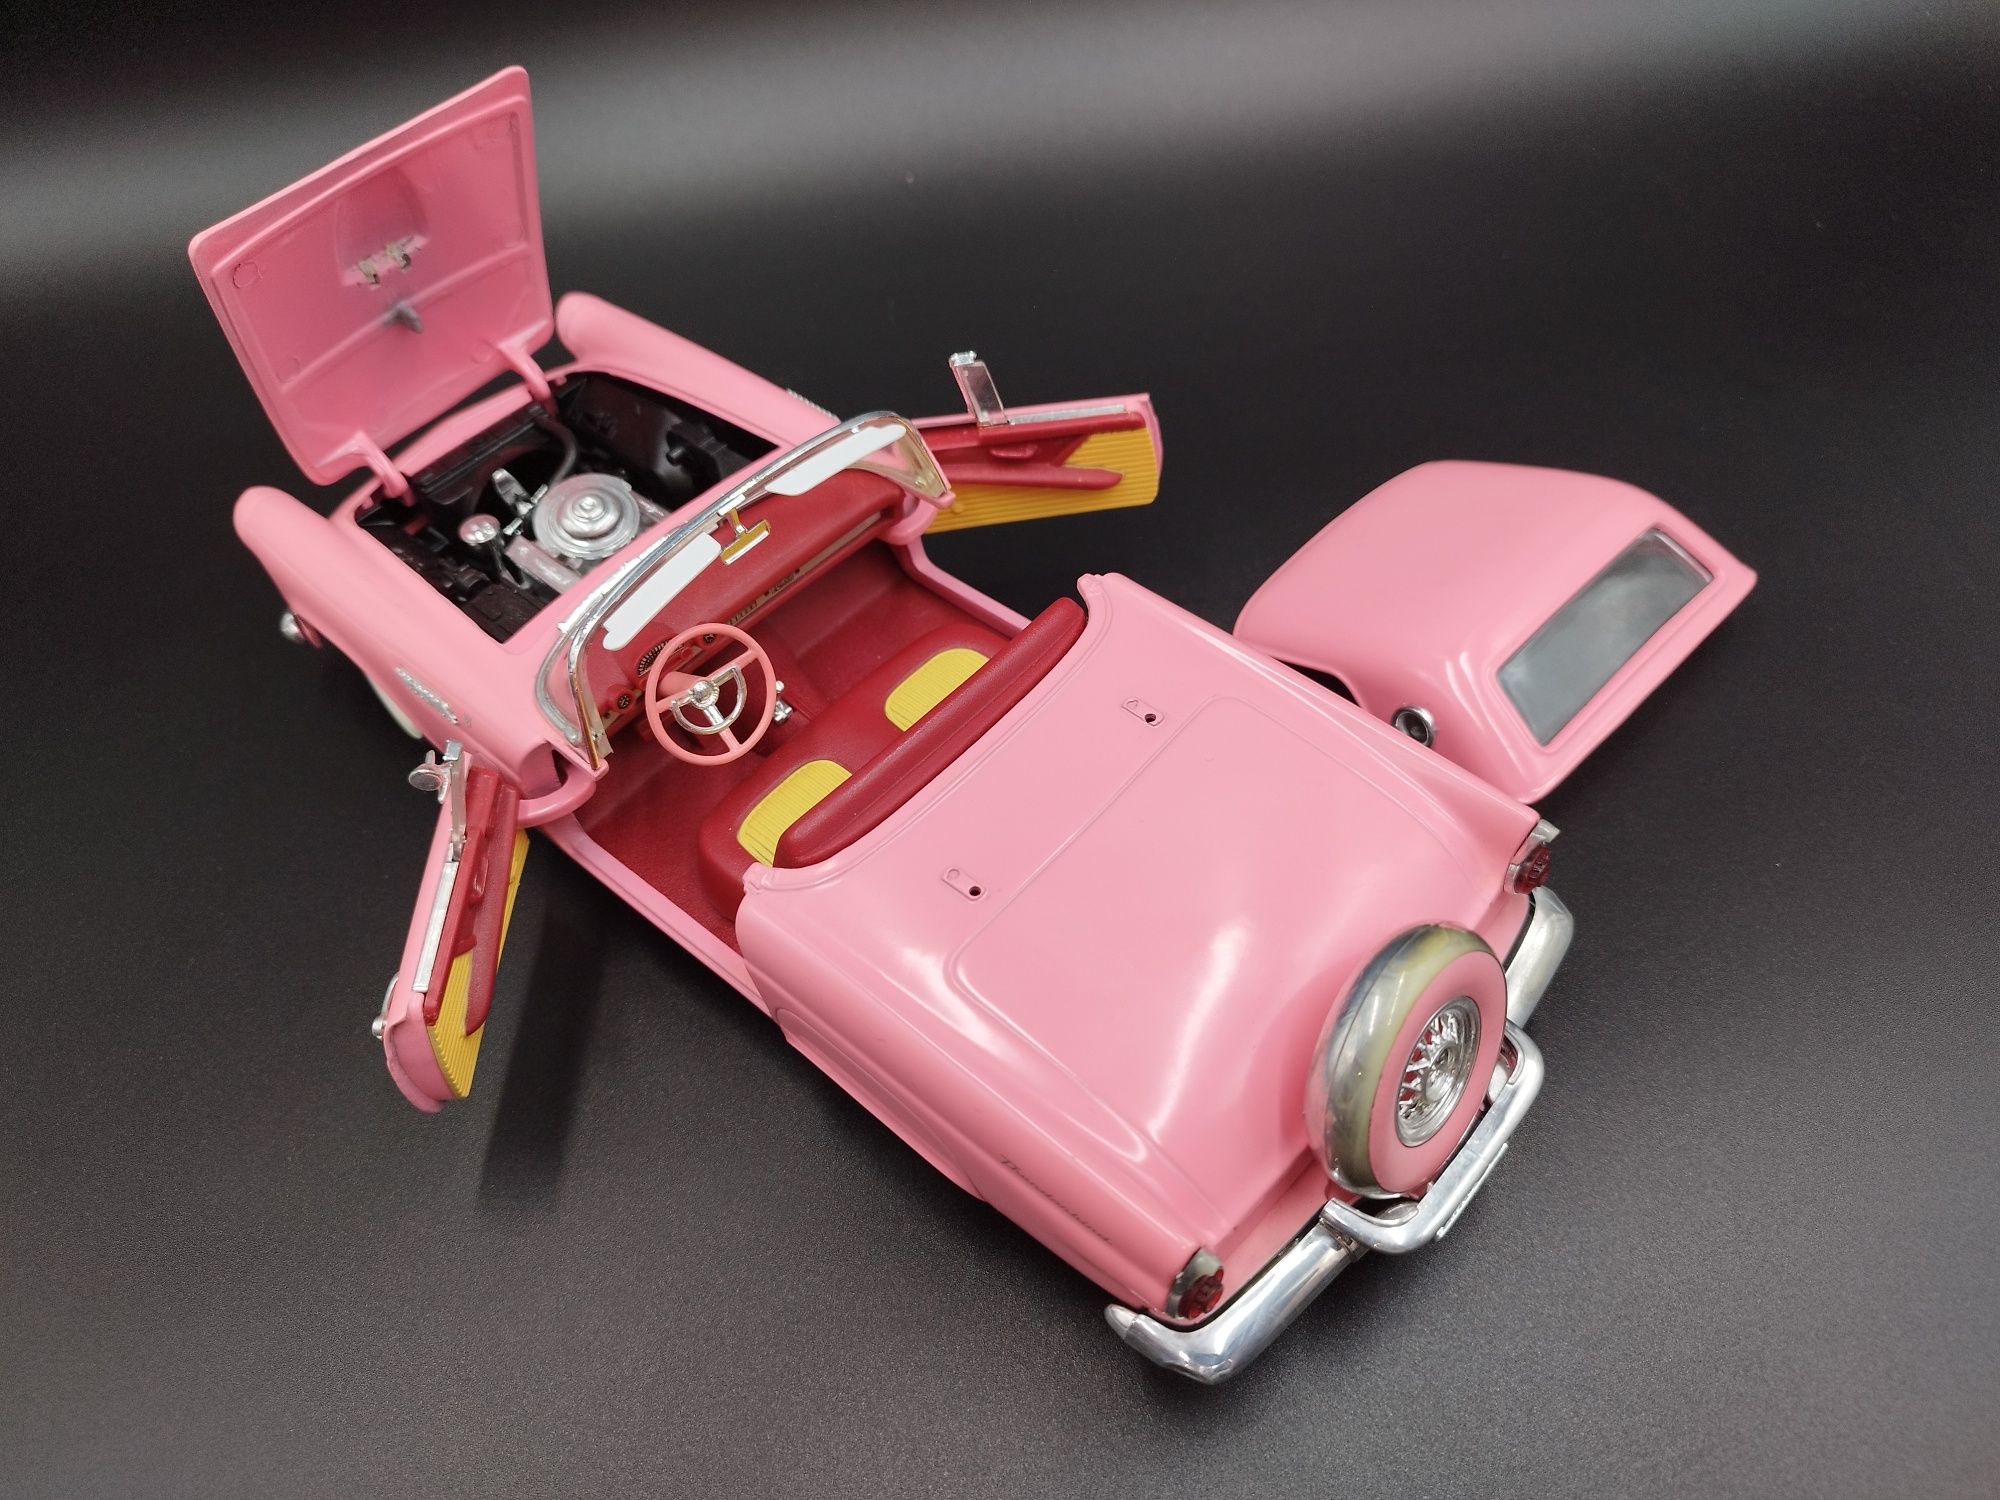 1:18 Revell 1956 Ford Thunderbird "Pink Dream" model